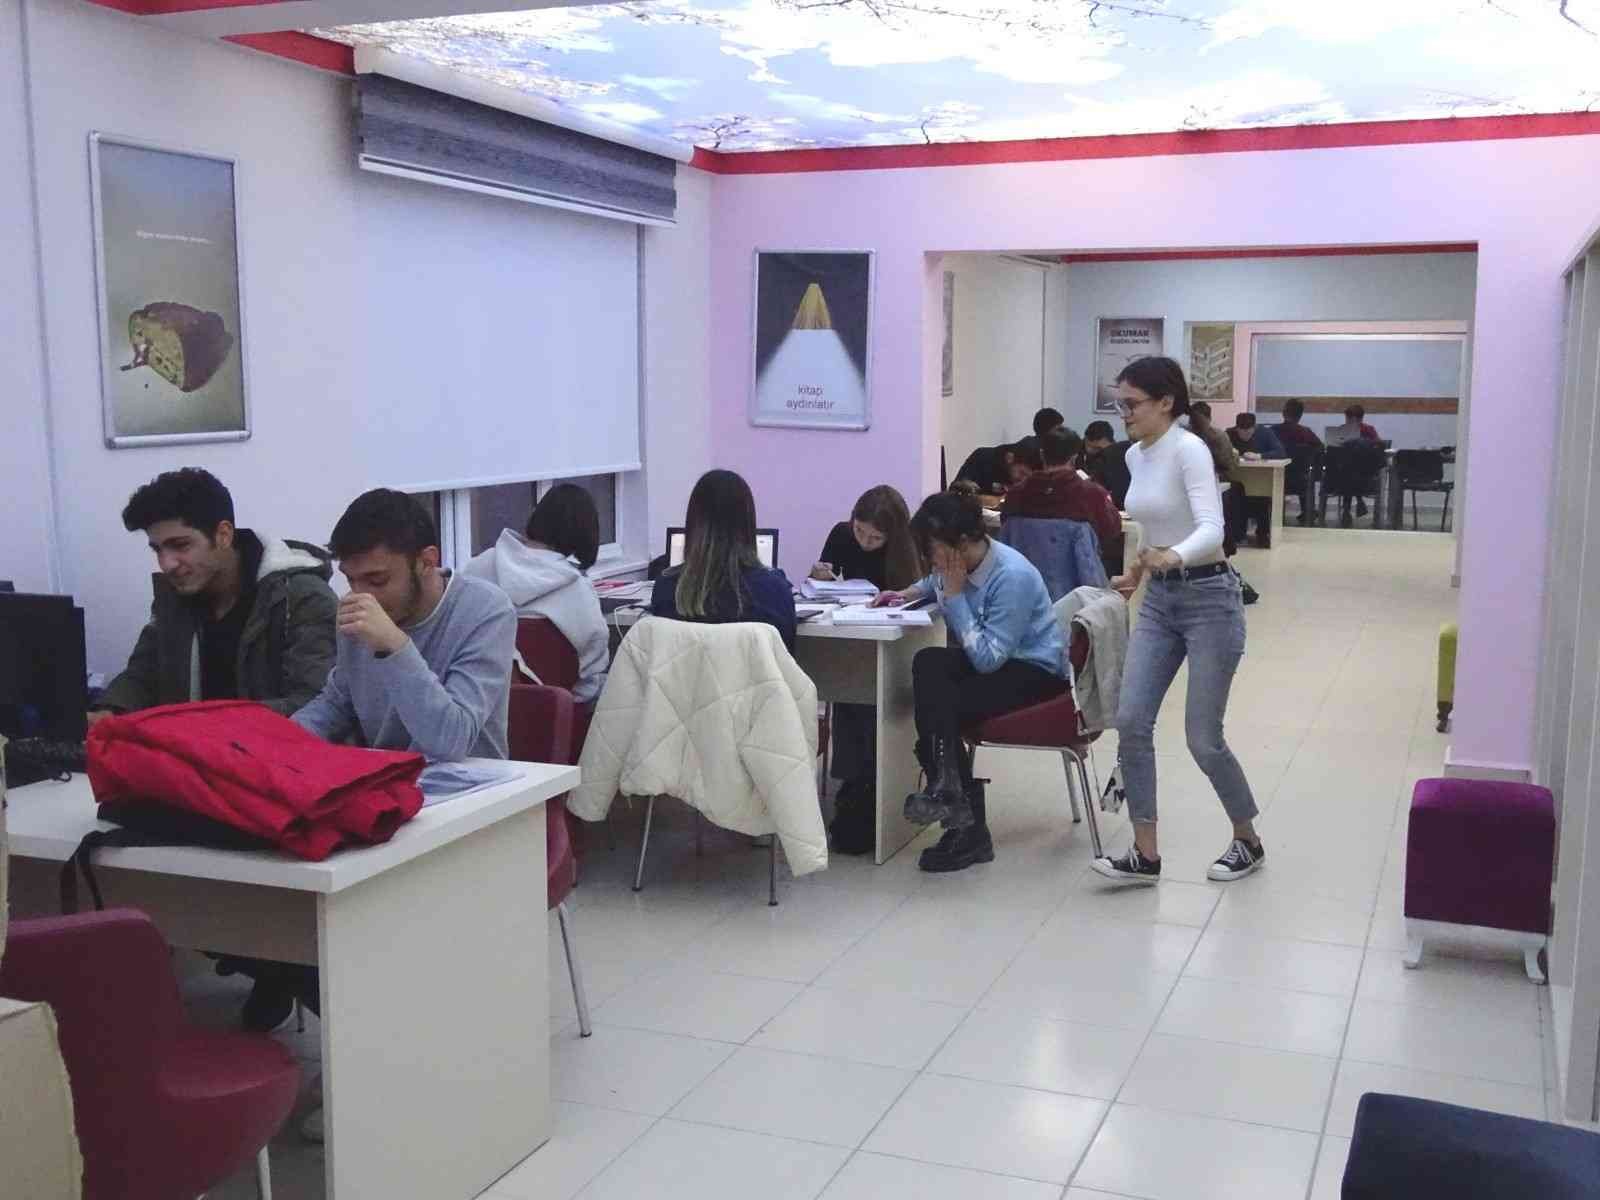 Hisarcık İlçe Halk Kütüphanesi öğrencilere 14 saat hizmet veriyor #kutahya